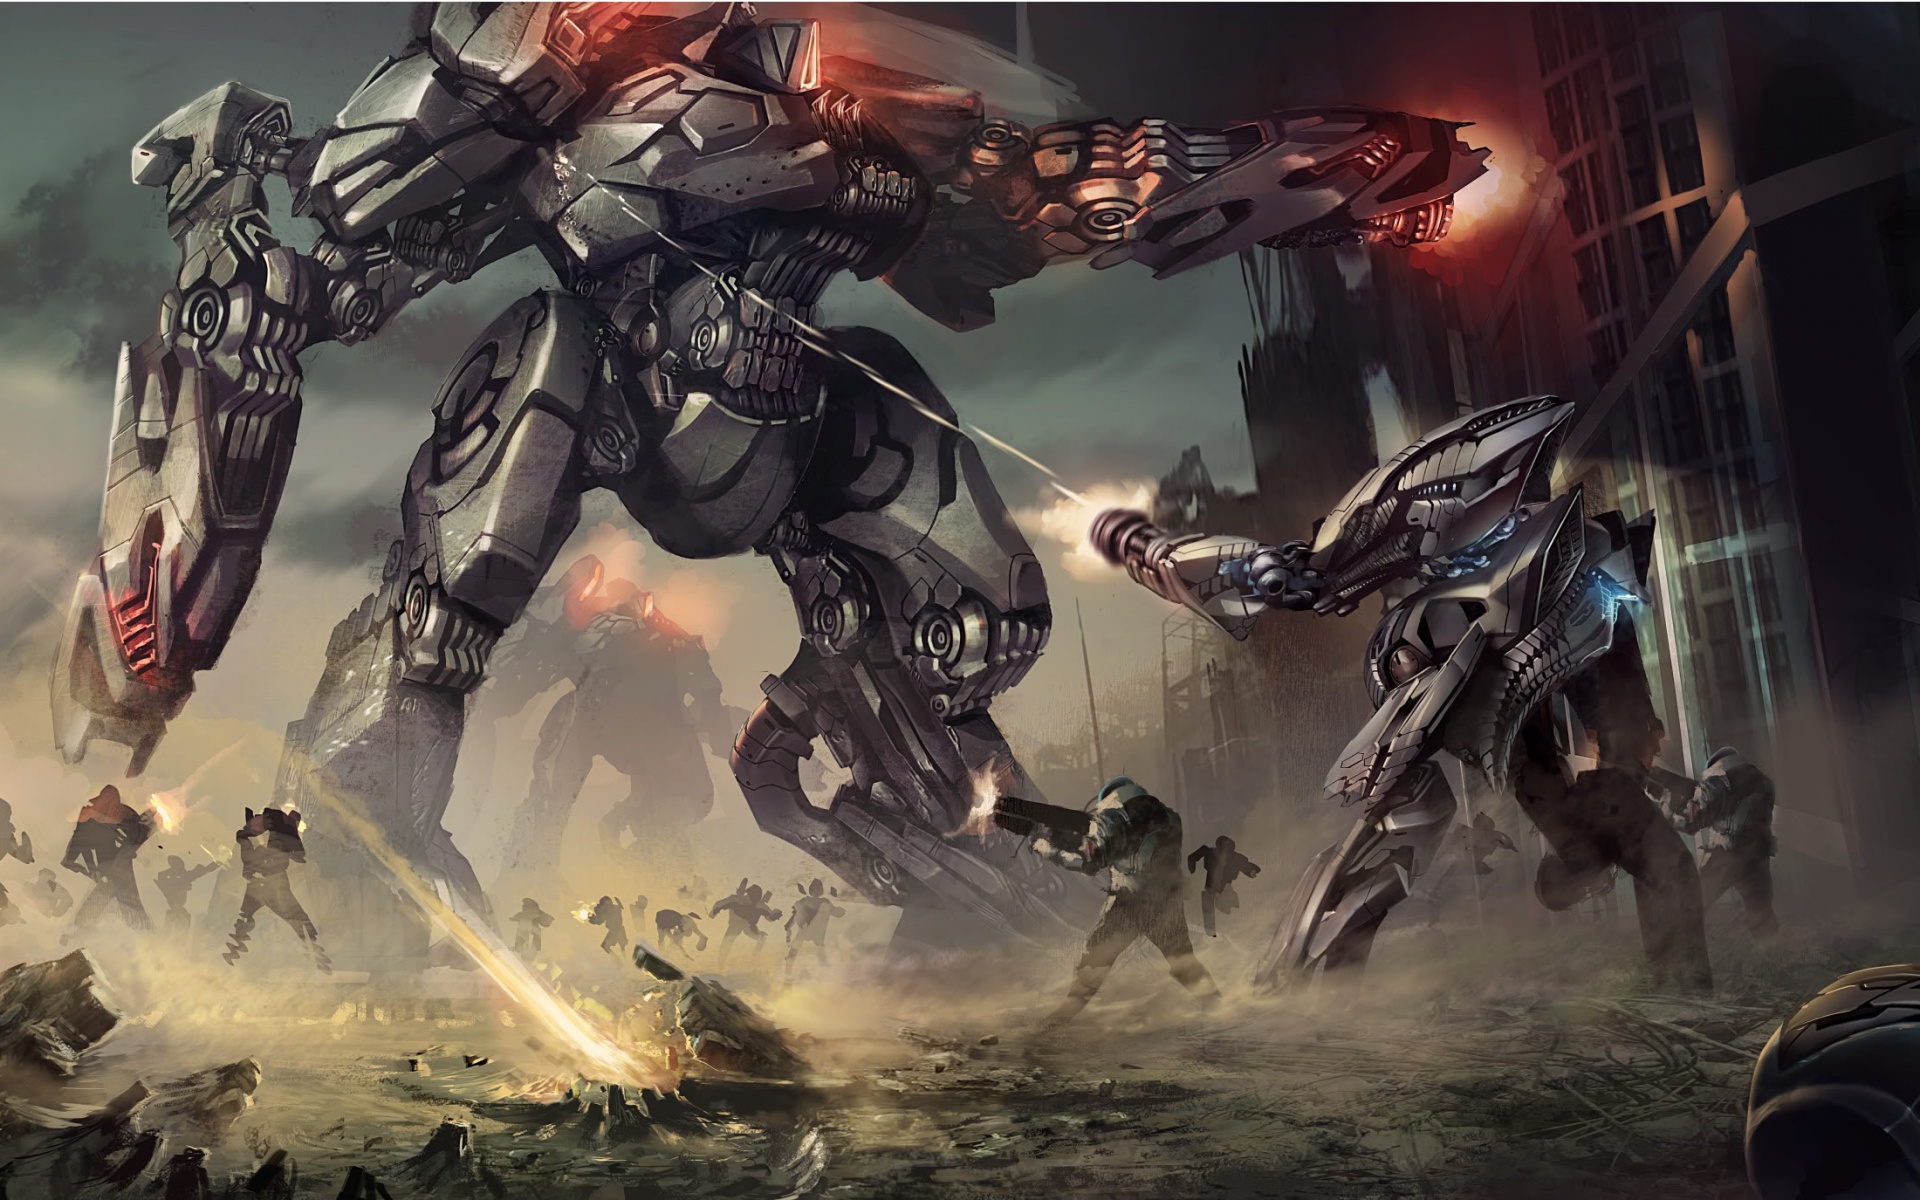 Robot Battle Art - ID: 43601